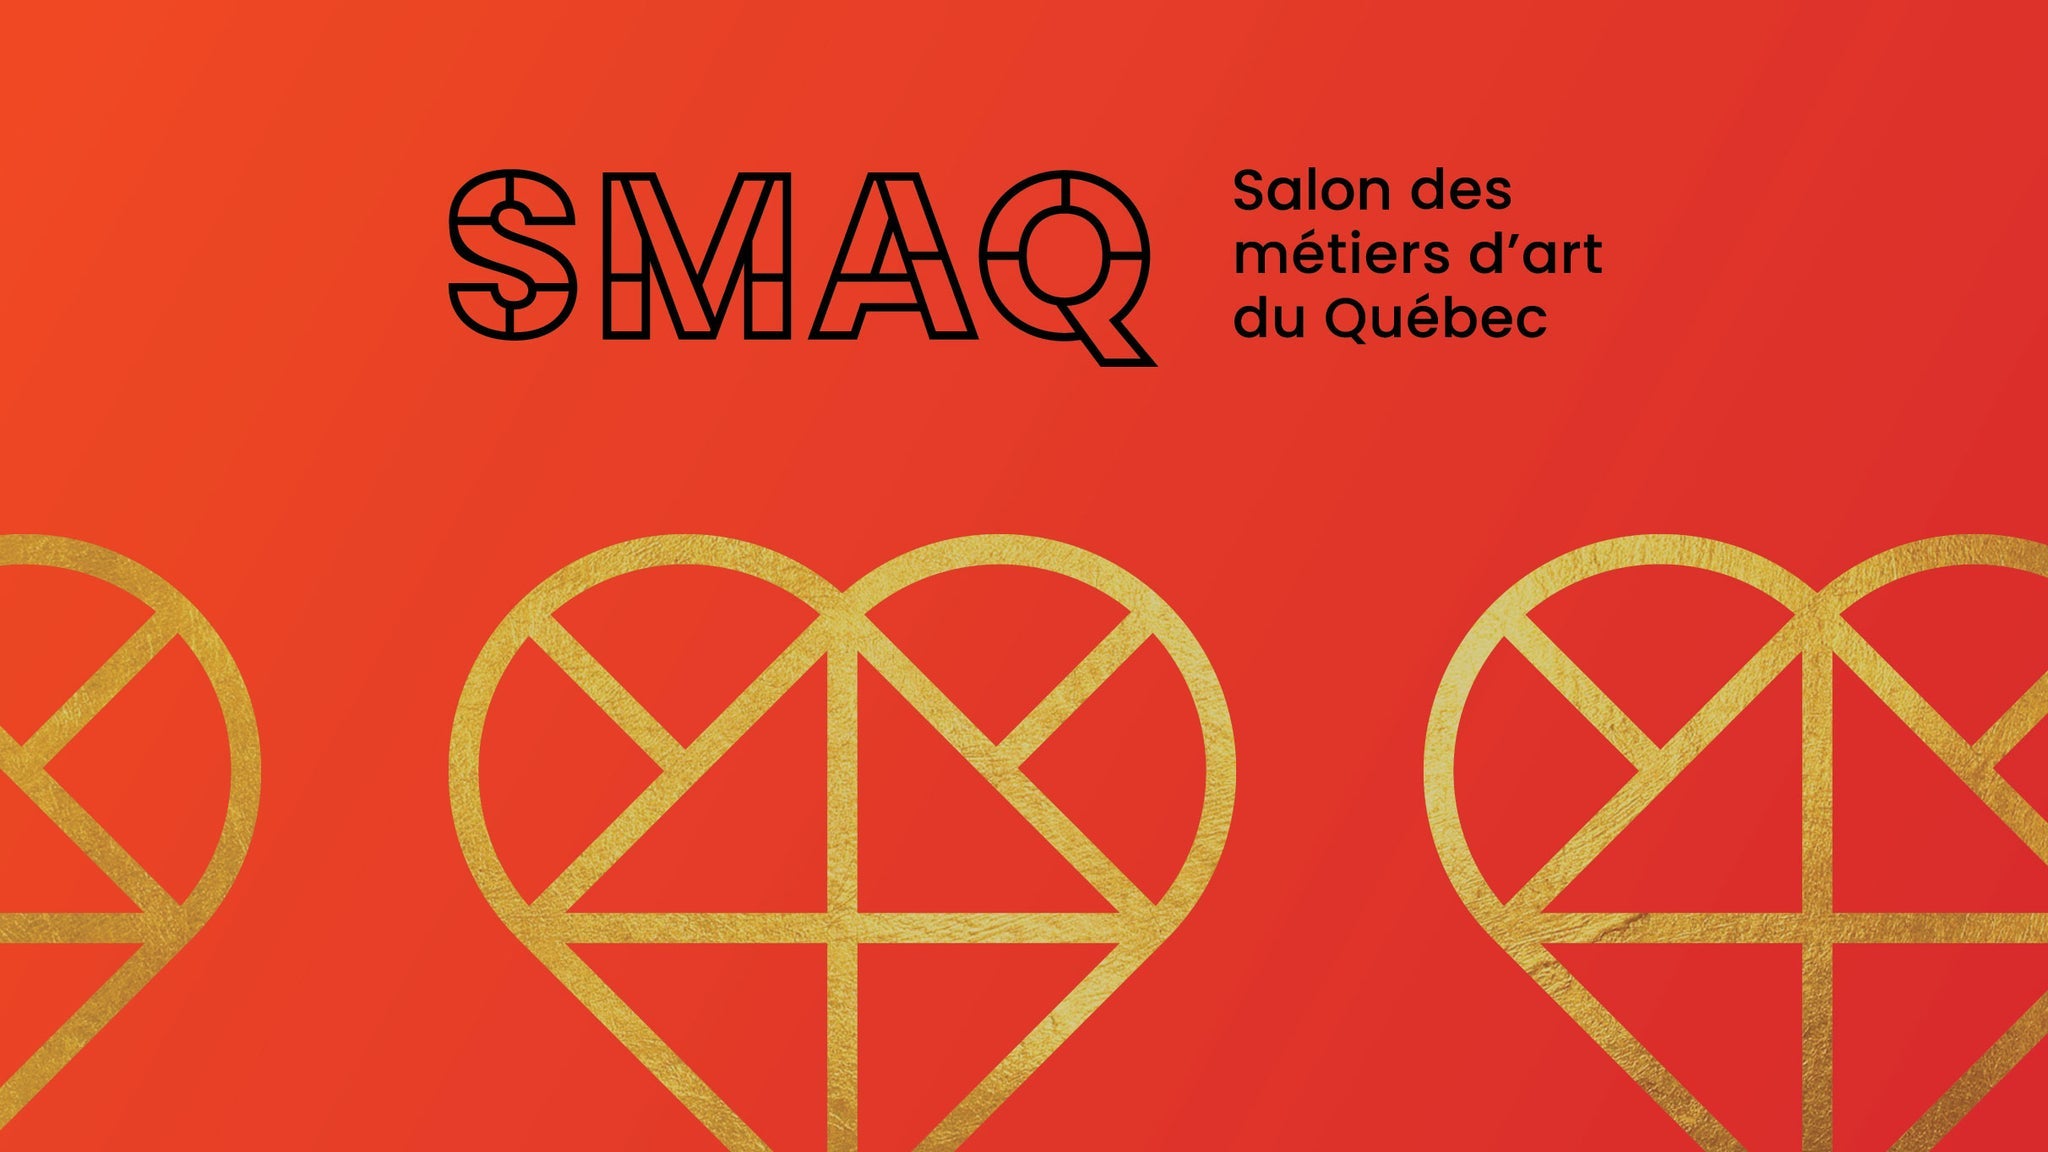 Salon des métiers d'art du Québec 2022 (SMAQ) in Montreal promo photo for Mise en vente Générale presale offer code